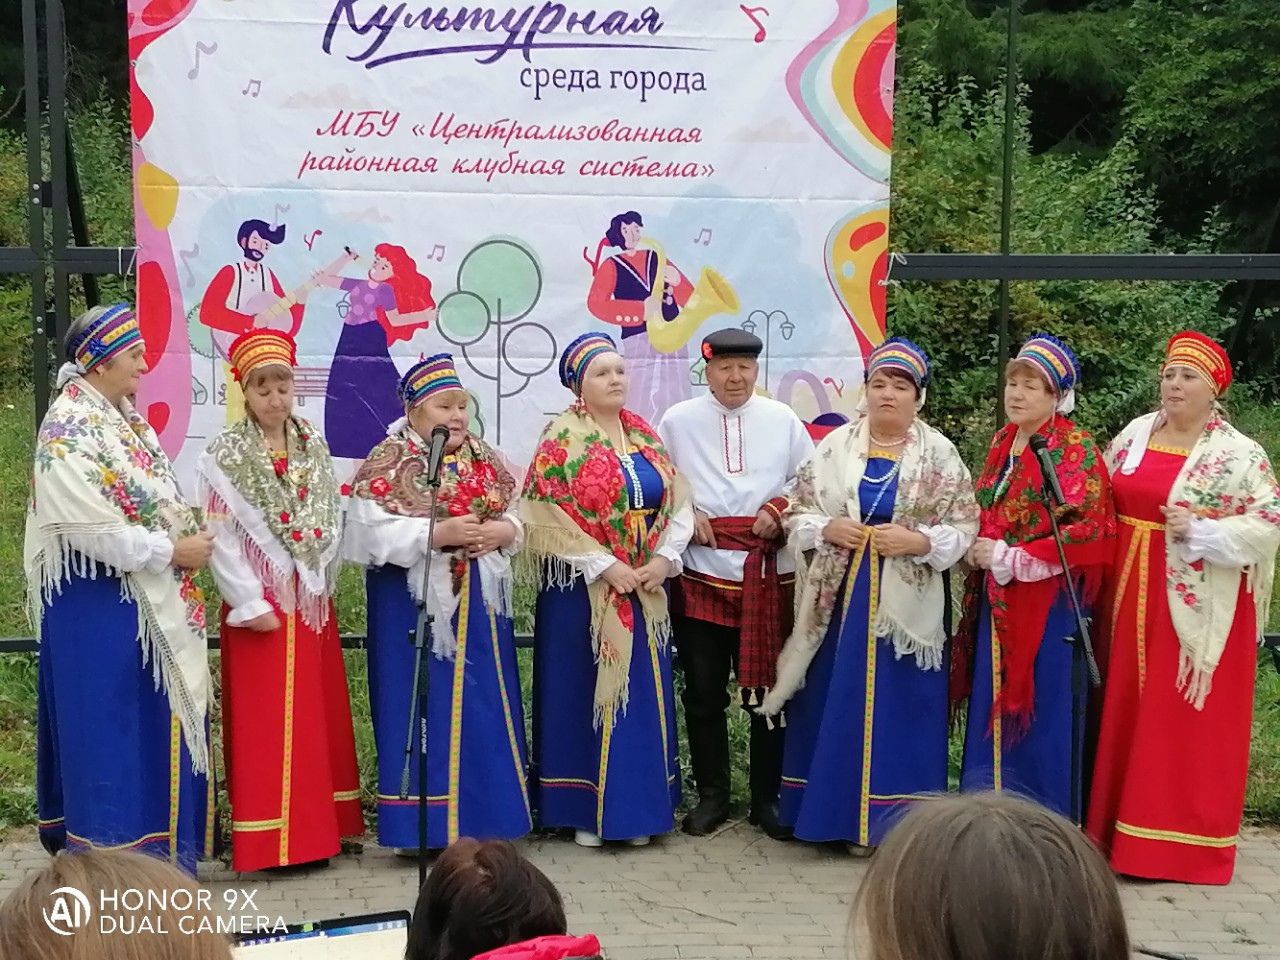 Отчетный концерт «Мелодии осени» прошел в Парке культуры и отдыха